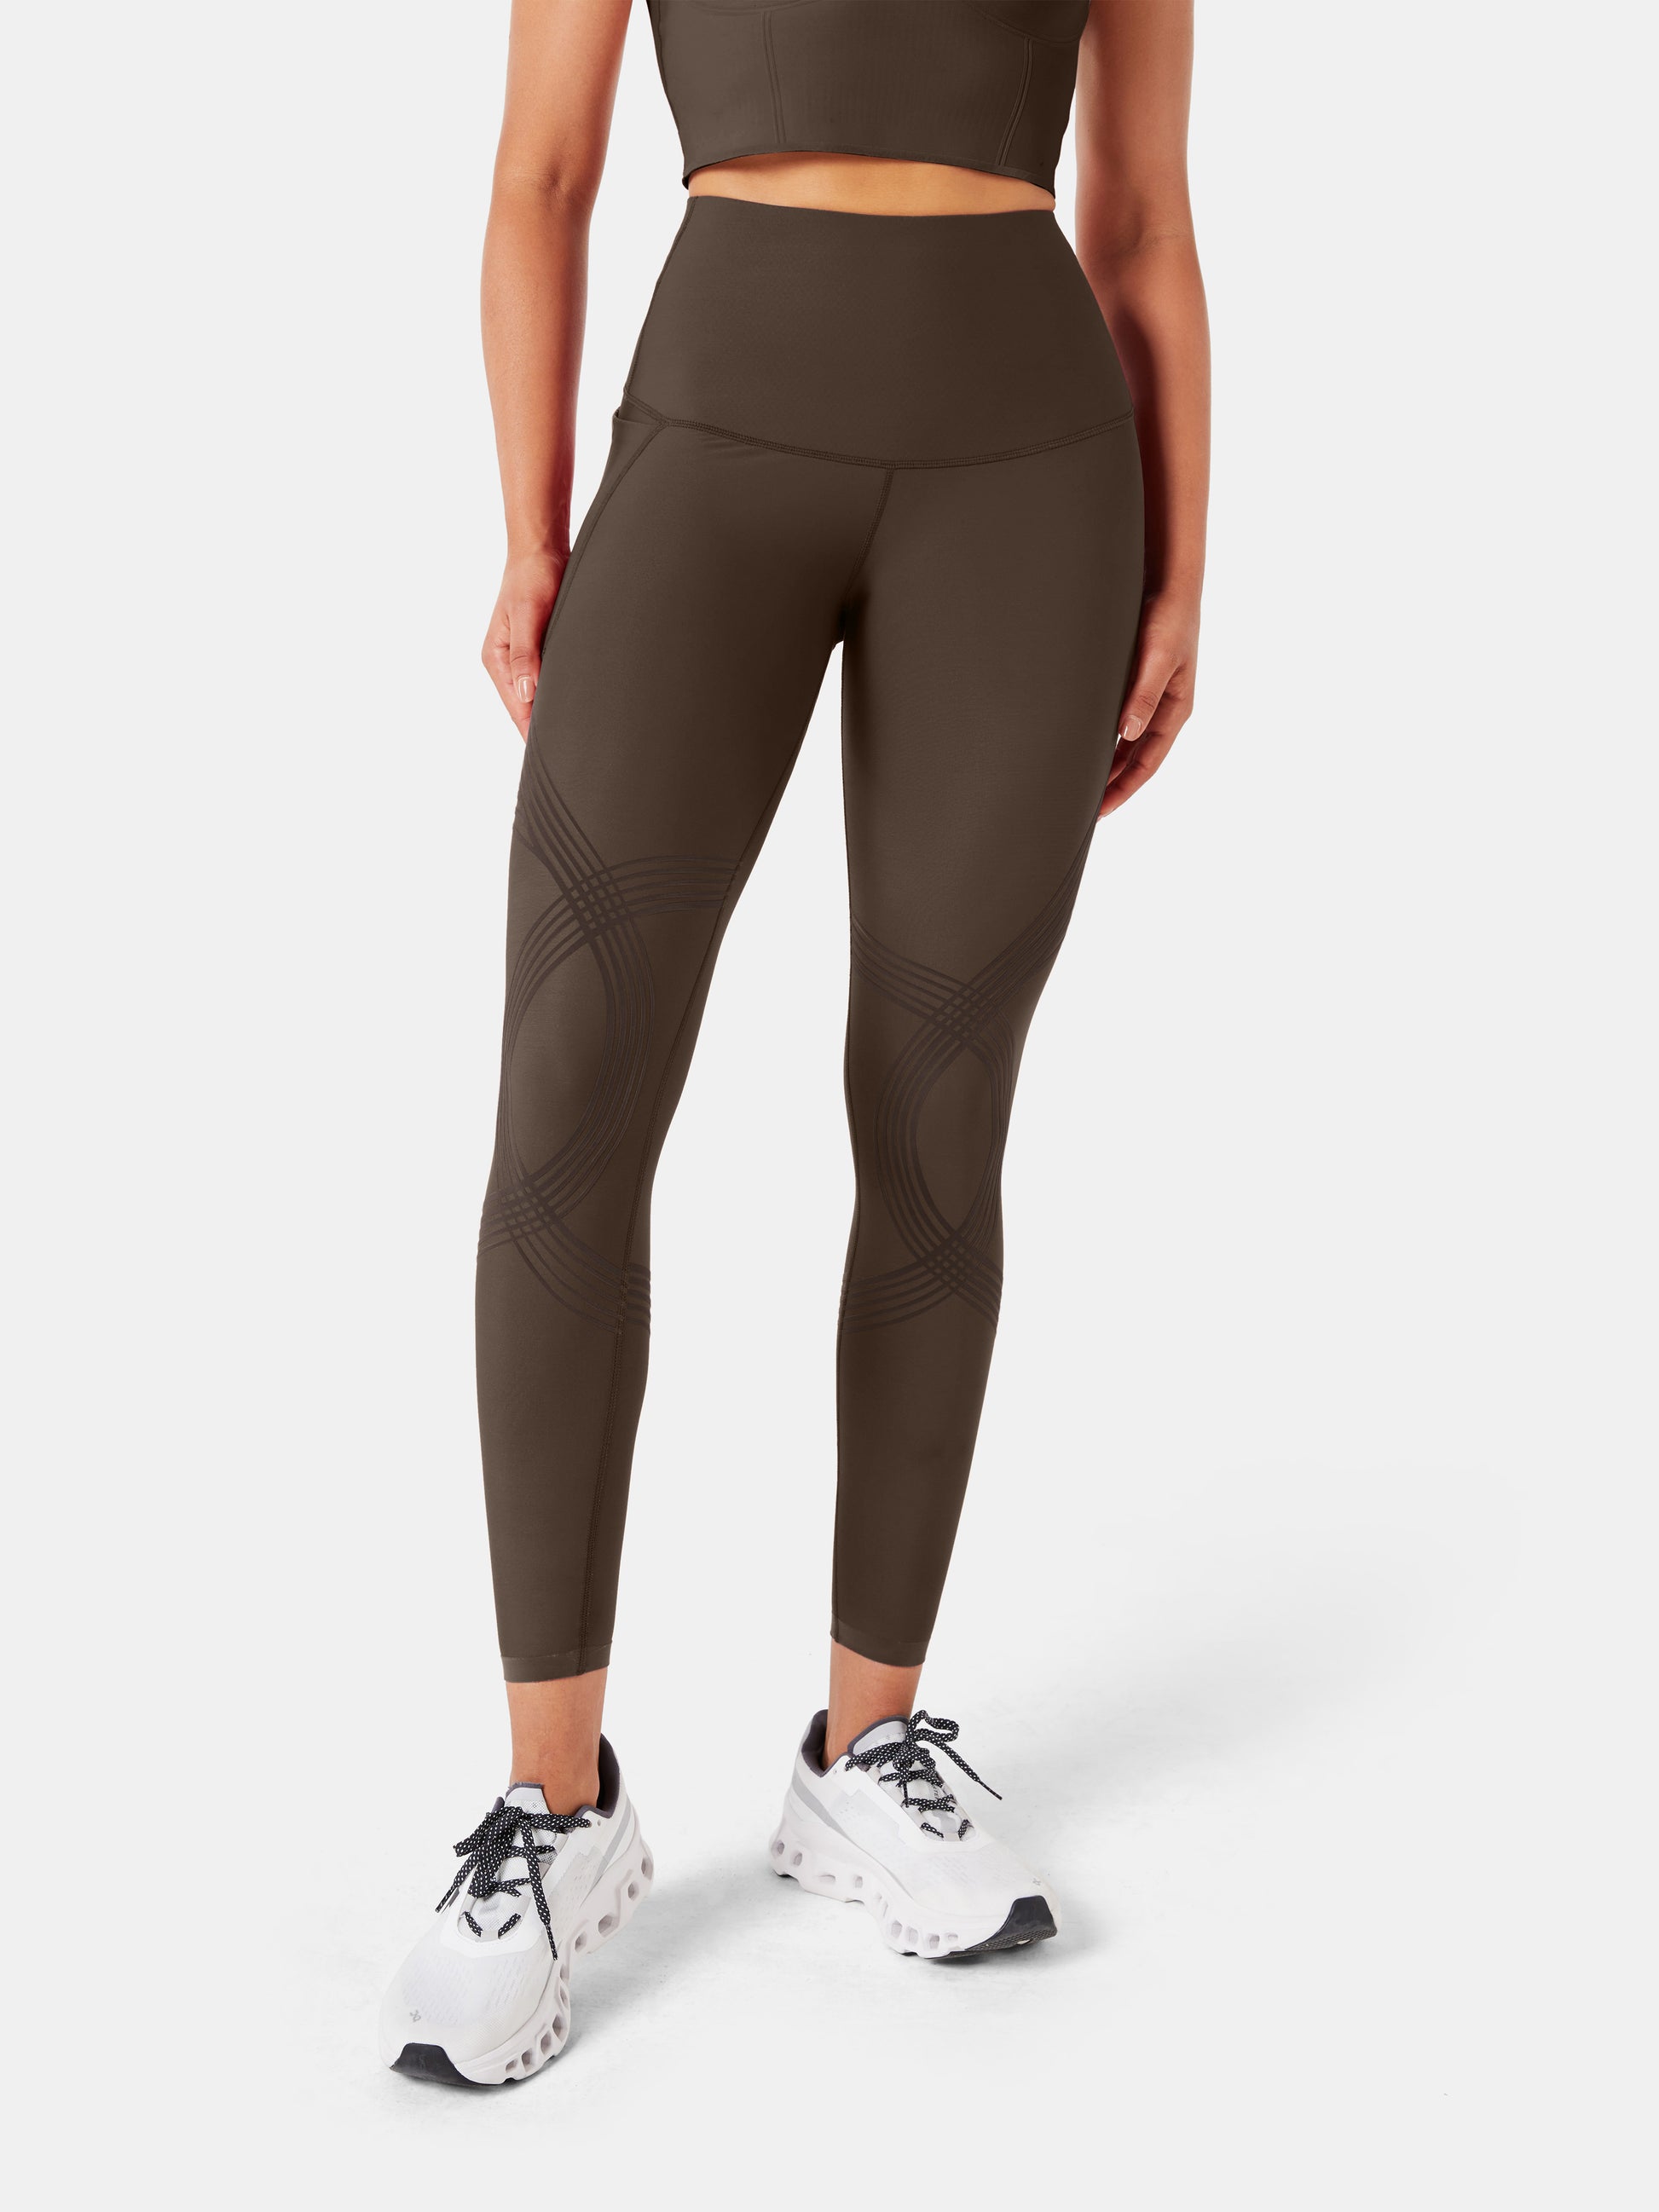 Compression-waist pocket legging, Nike